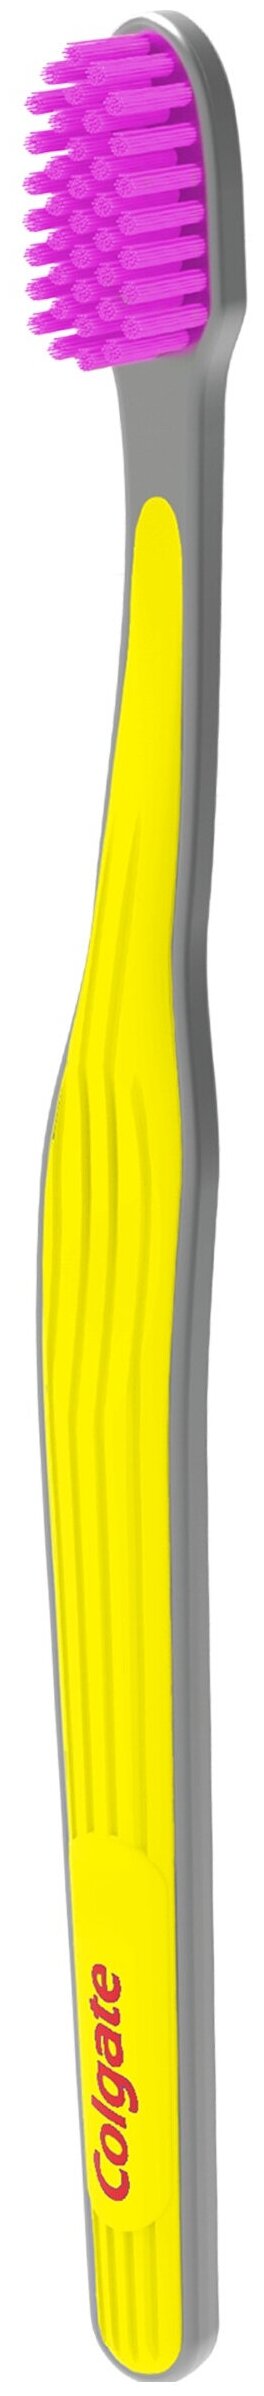 Зубная щетка Colgate Ультрамягкость, желтый, диаметр щетинок 0.1 мм